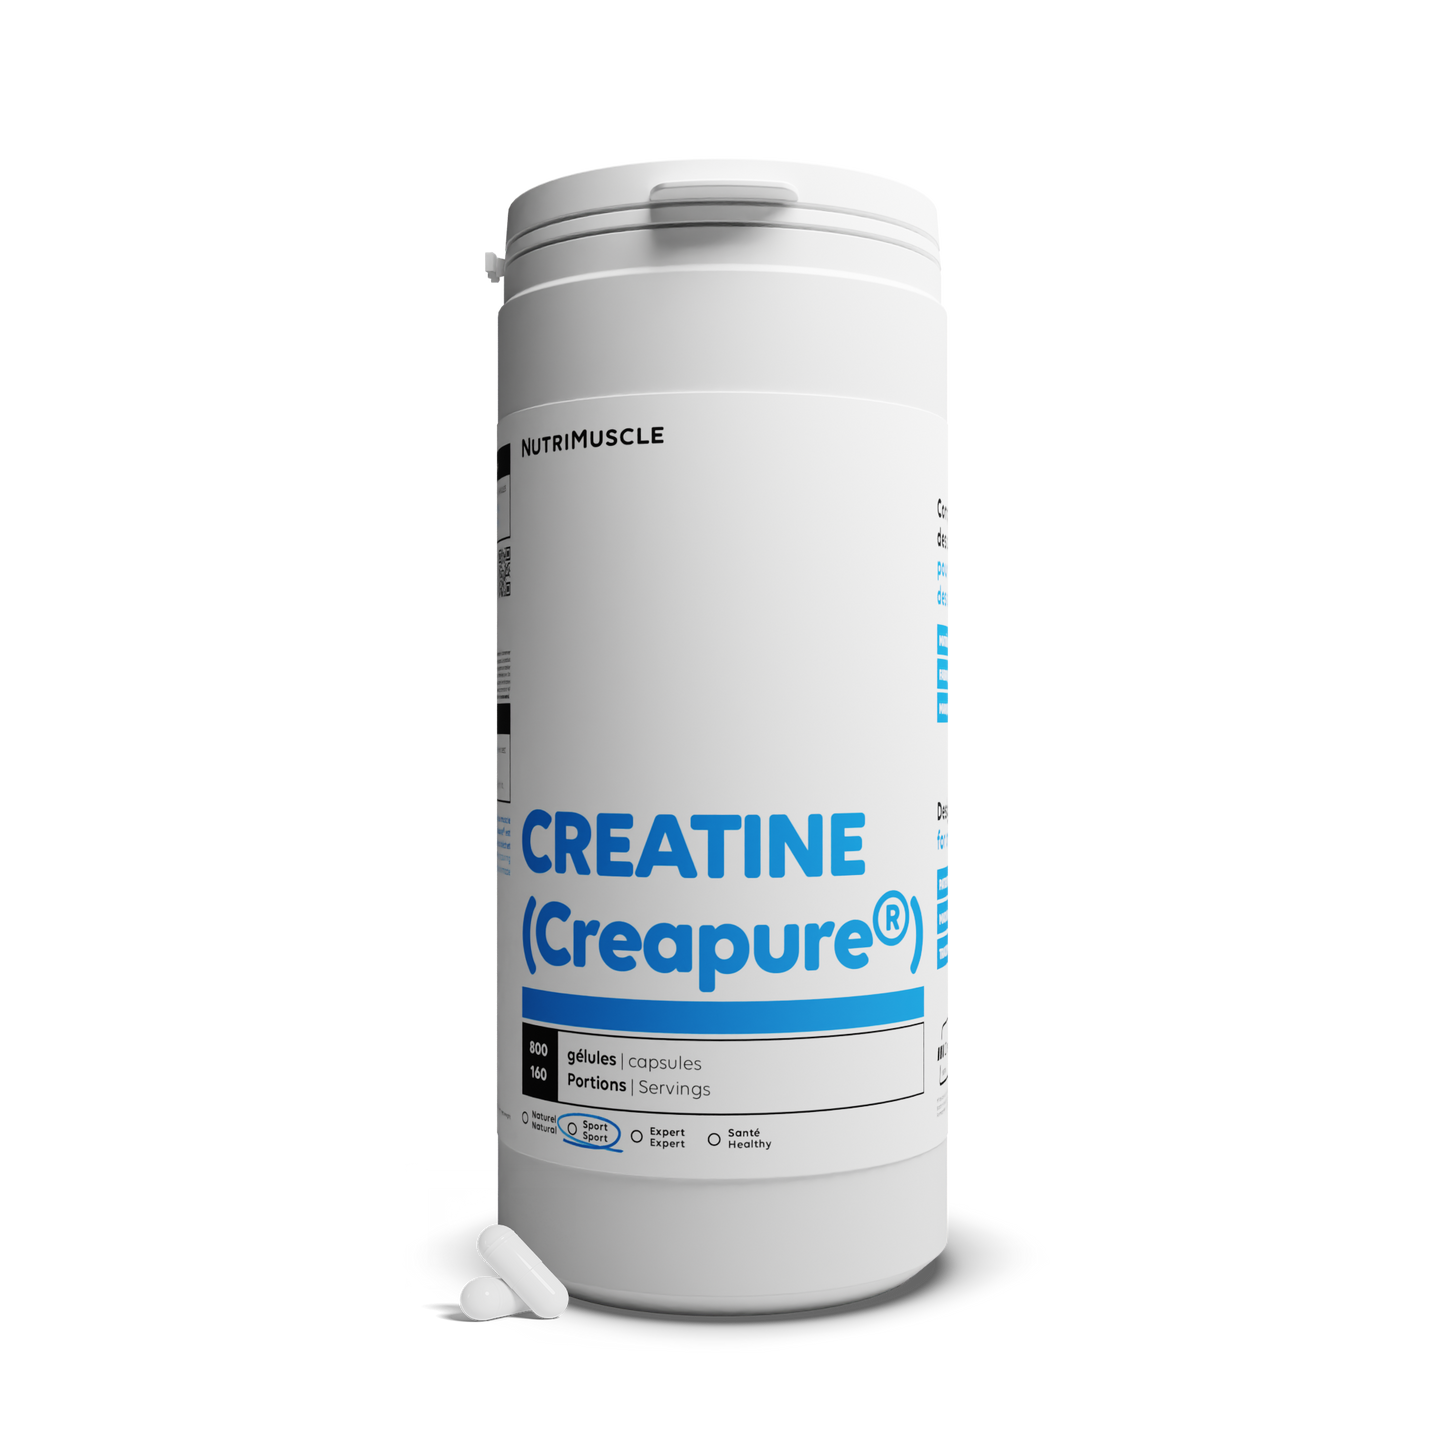 Creatine (Creapure®) in capsules